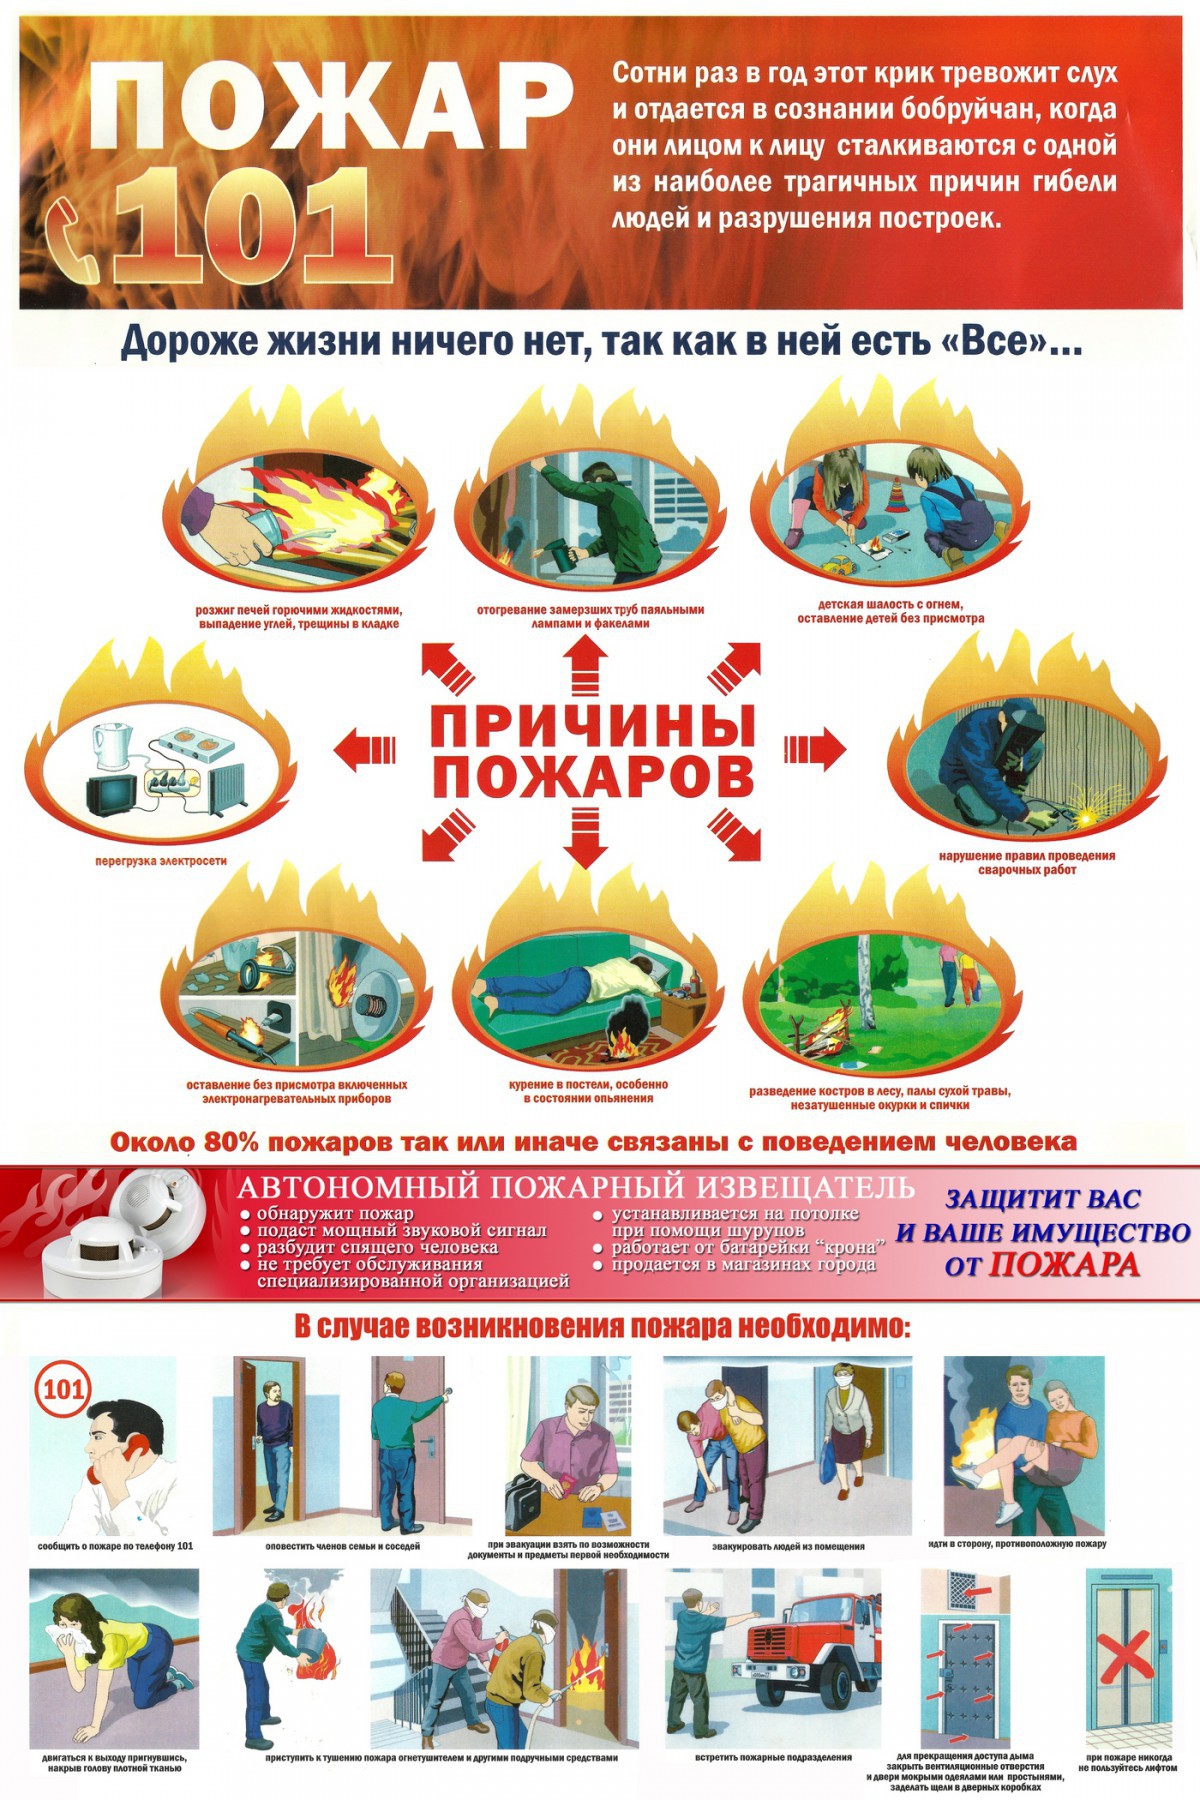 За период с 31 августа по 7 сентября 2015 года в городе Бобруйске произошел 1 пожар. В Бобруйском районе за данный период произошел 1 пожар, погиб 1 человек.